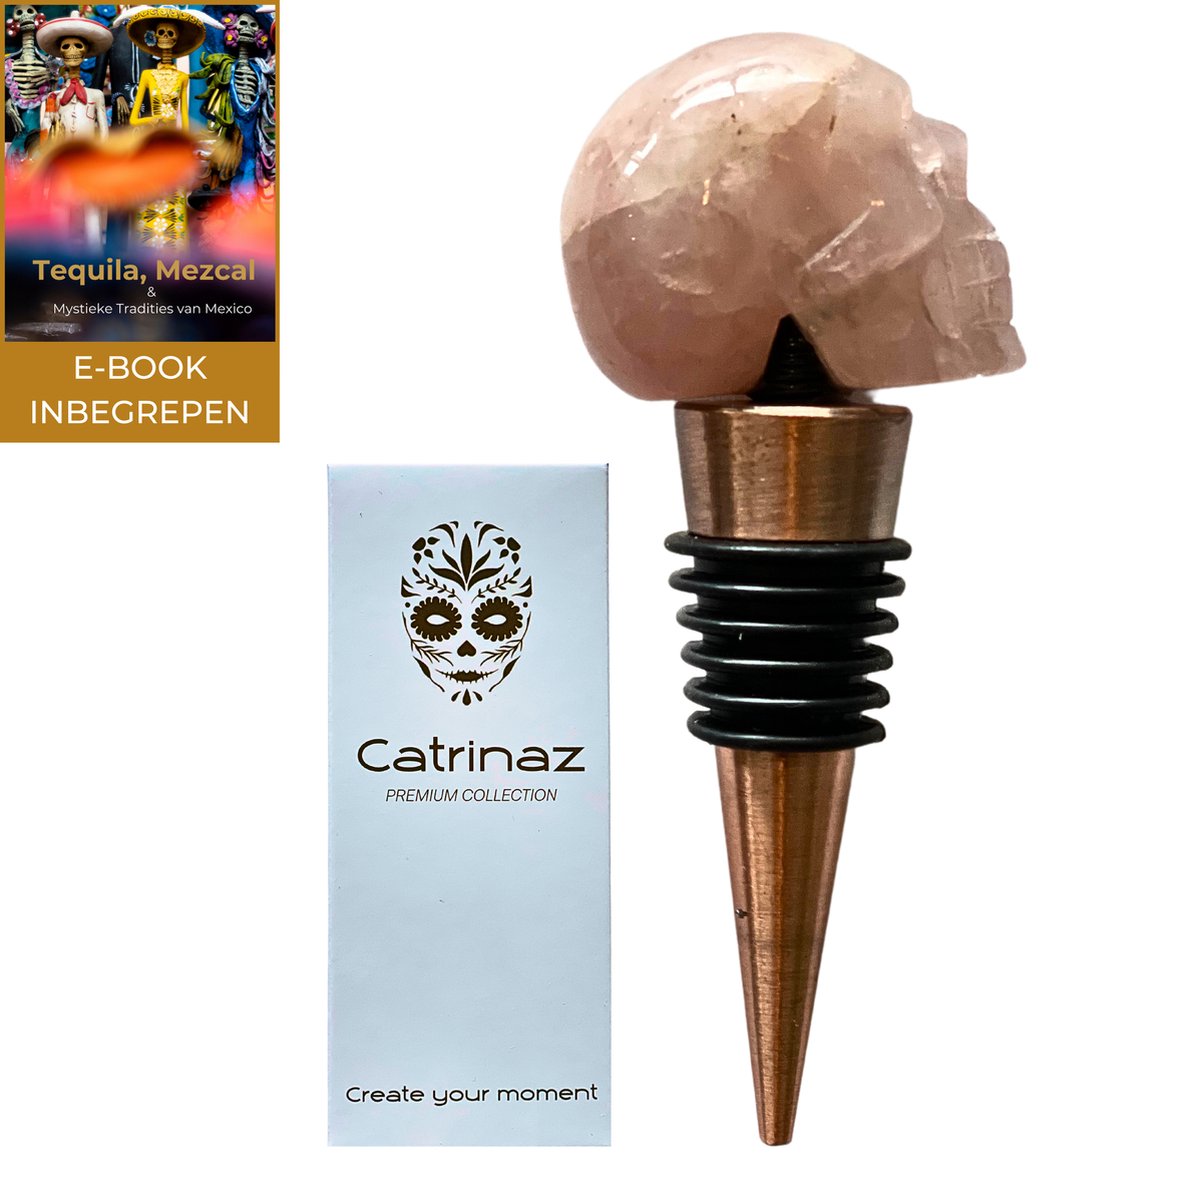 Catrinaz® - Wijnstopper - Premium flessenstop met skull in rozenkwarts natuursteen - Luxe gift box - Uniek geschenk - Inclusief E-BOOK Tequila, Mezcal - Catrinaz